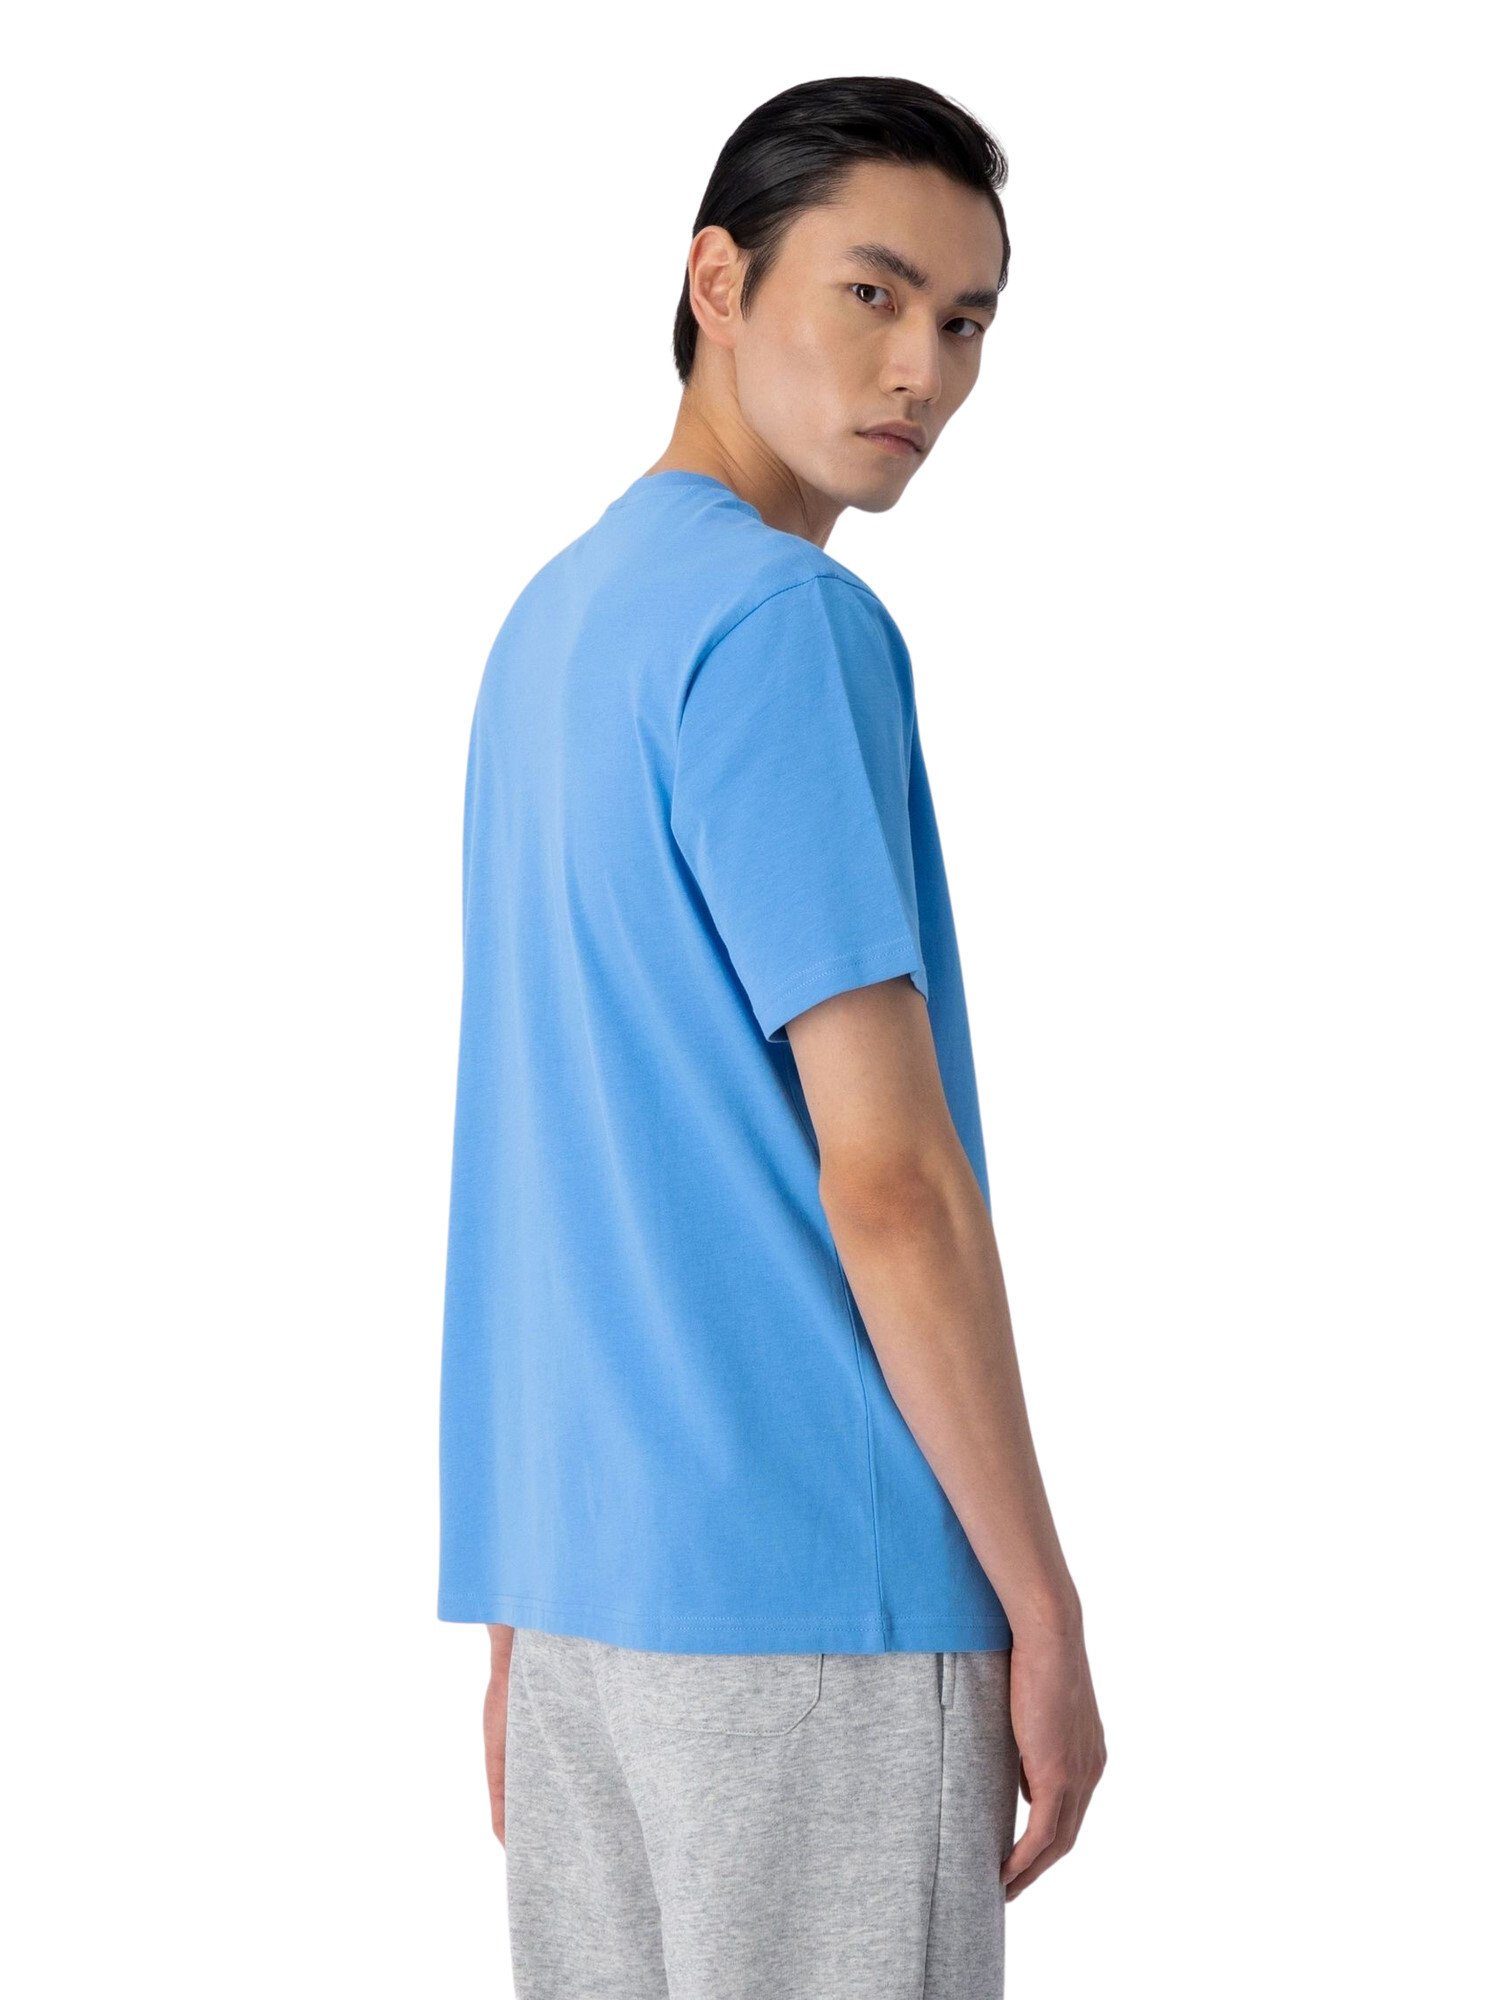 Rundhals-T-Shirt mit T-Shirt hellblau aus Shirt Baumwolle Champion